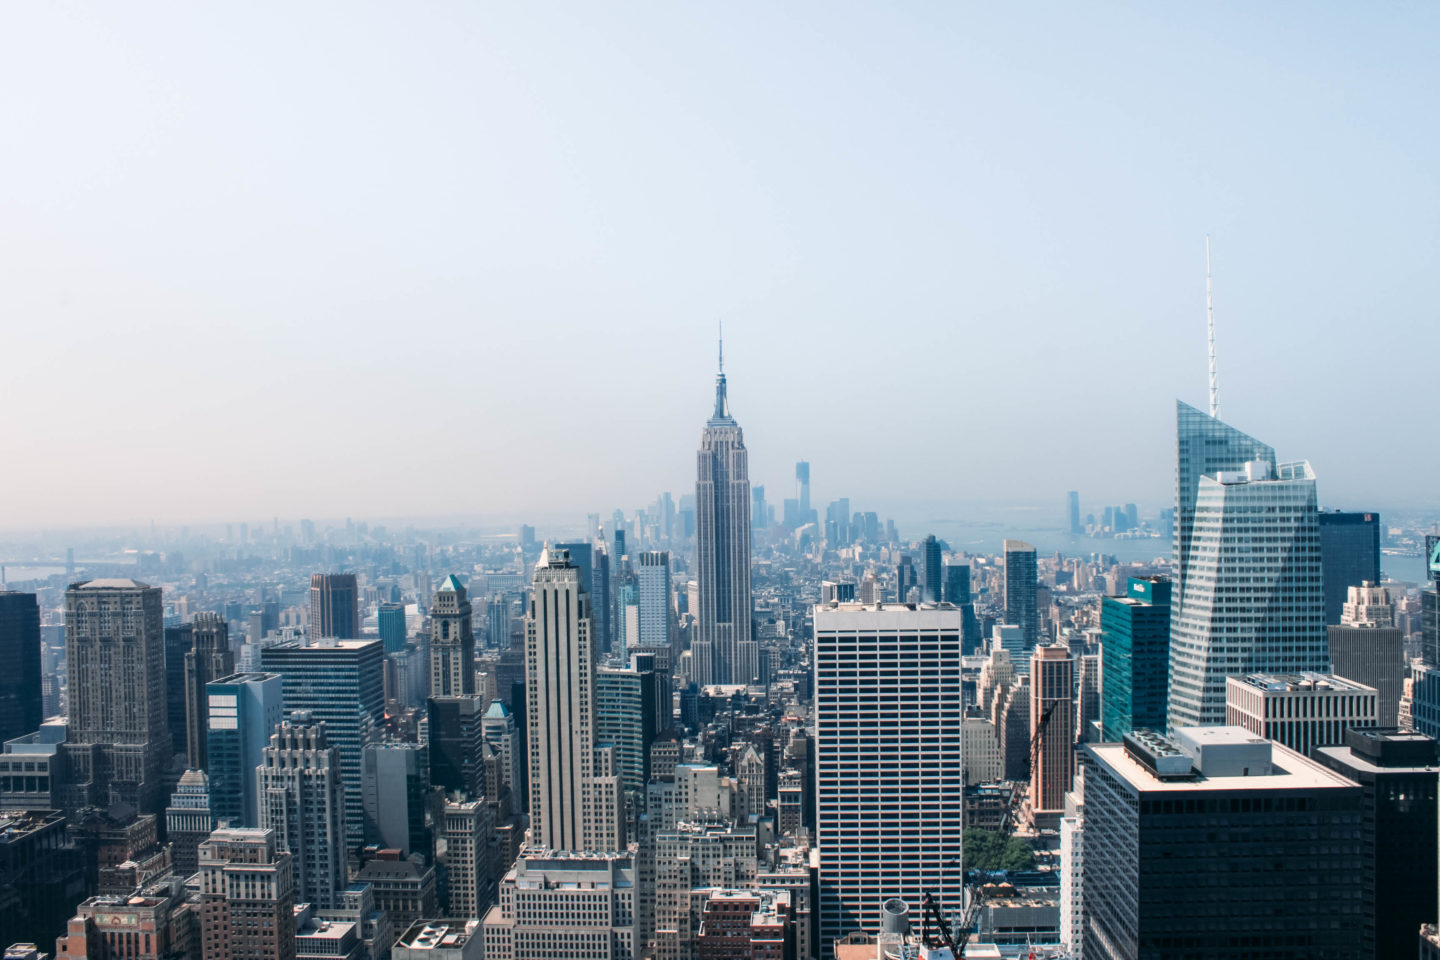 veduta di new york dall'alto con empire state building